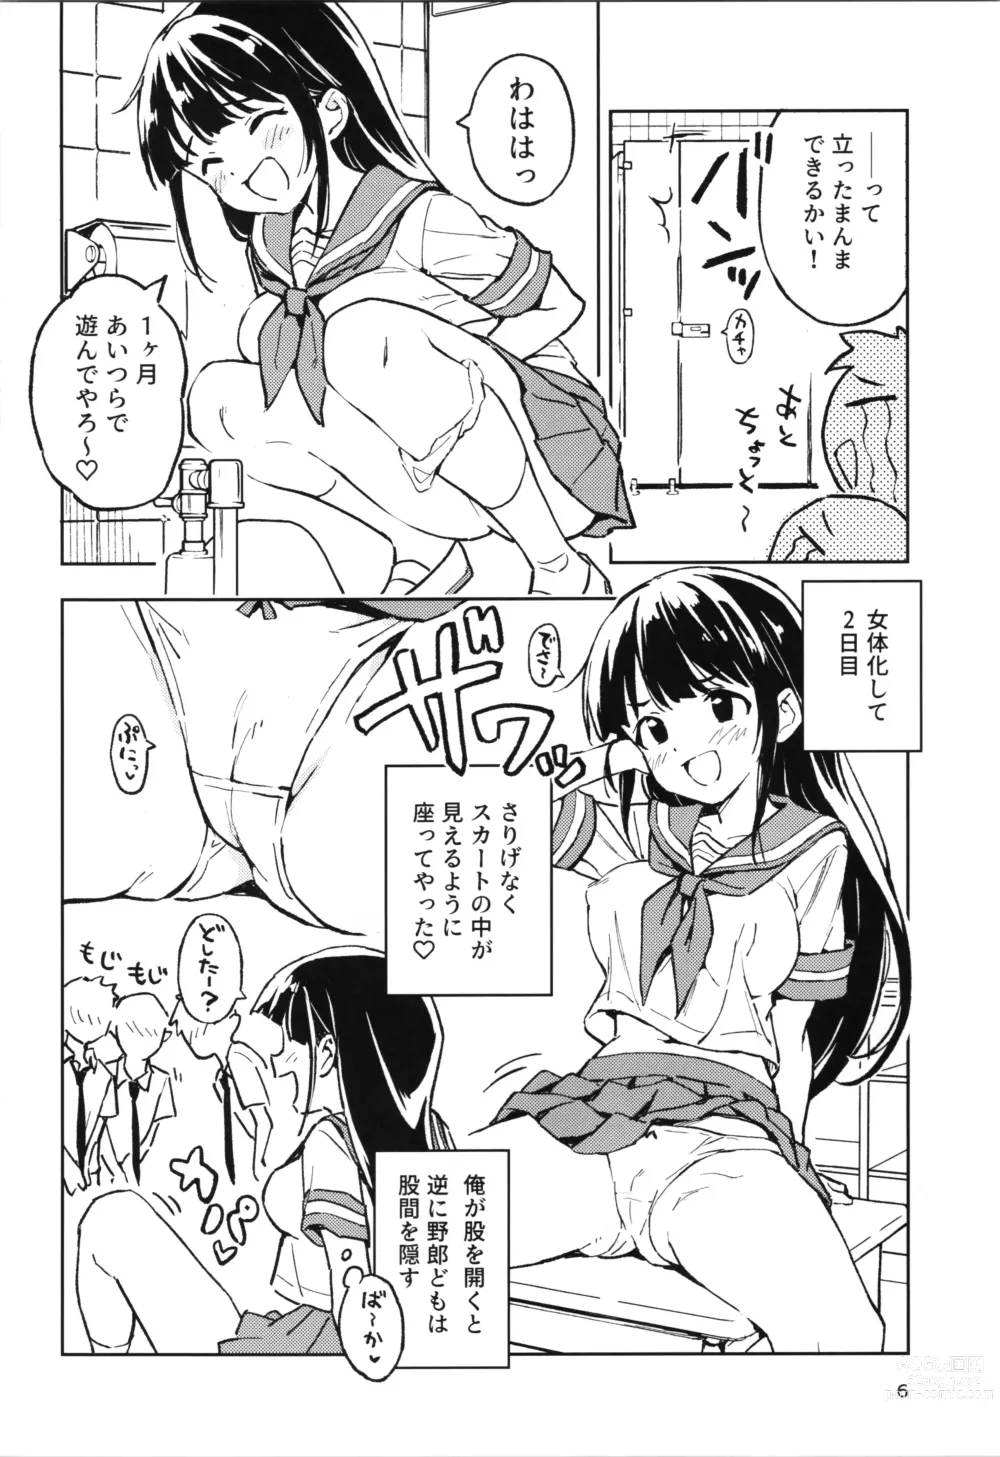 Page 6 of doujinshi 1-kagetsu Ninshin Shinakereba Otoko ni Modoreru Hanashi